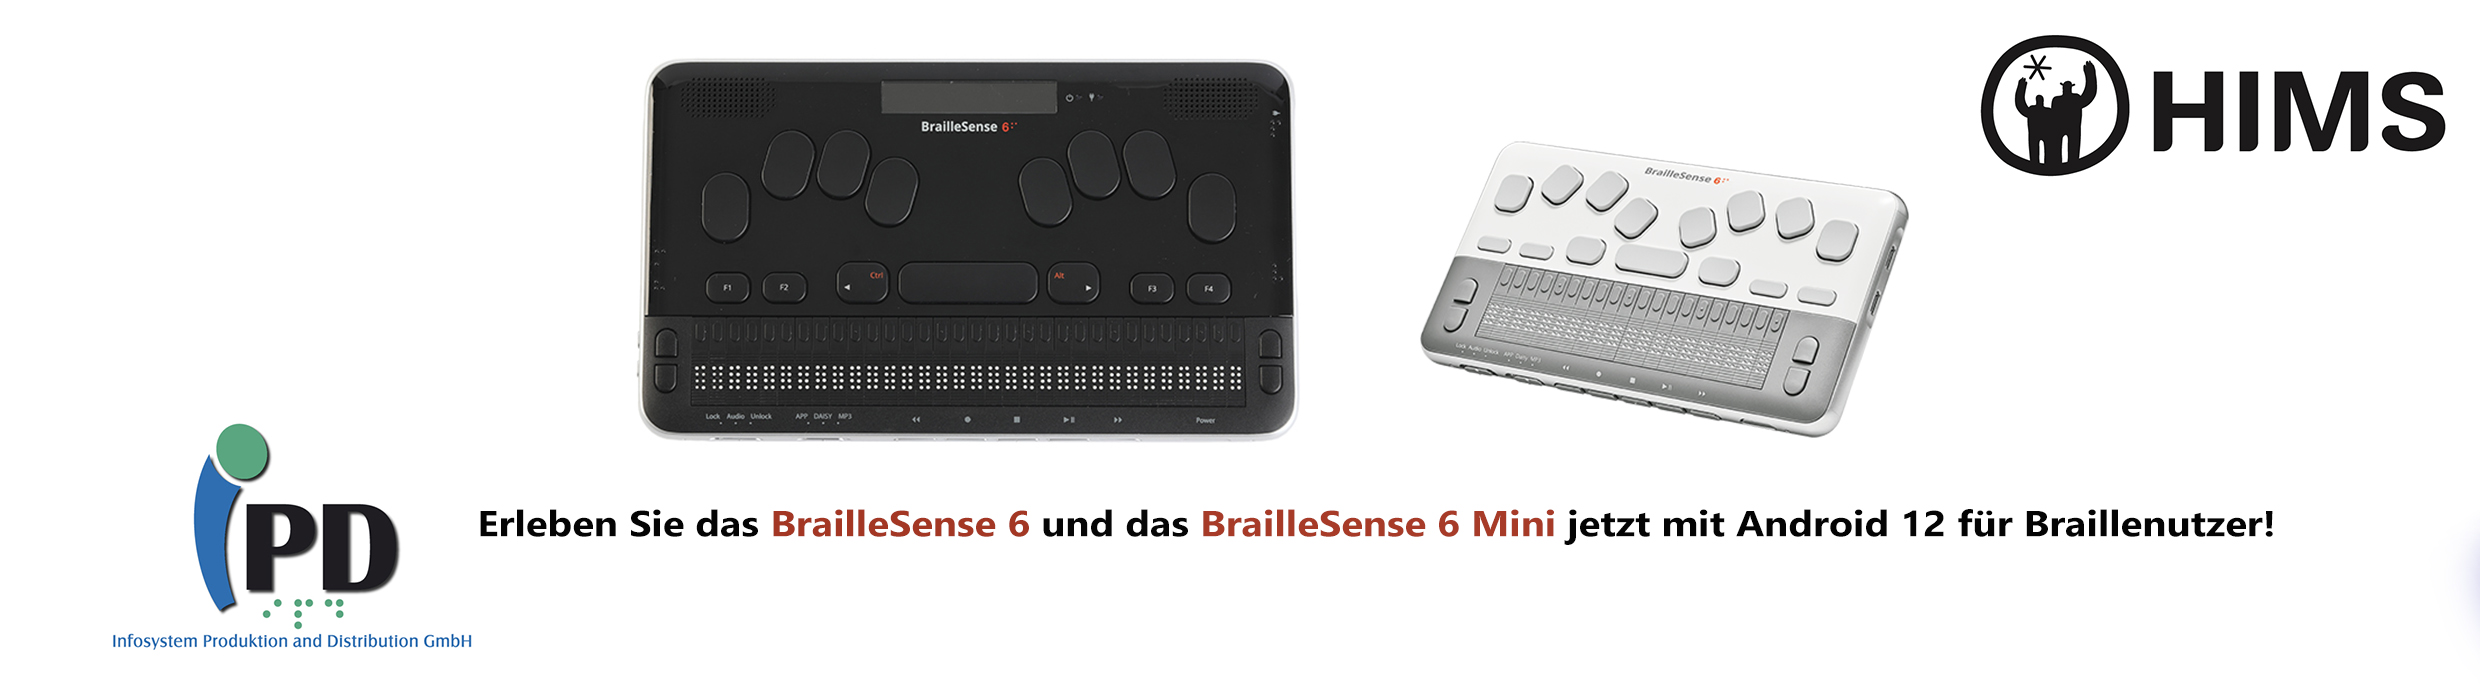 Erleben Sie das BrailleSense 6 und das BrailleSense 6 Mini jetzt mit Android 12 für Braillenutzer!